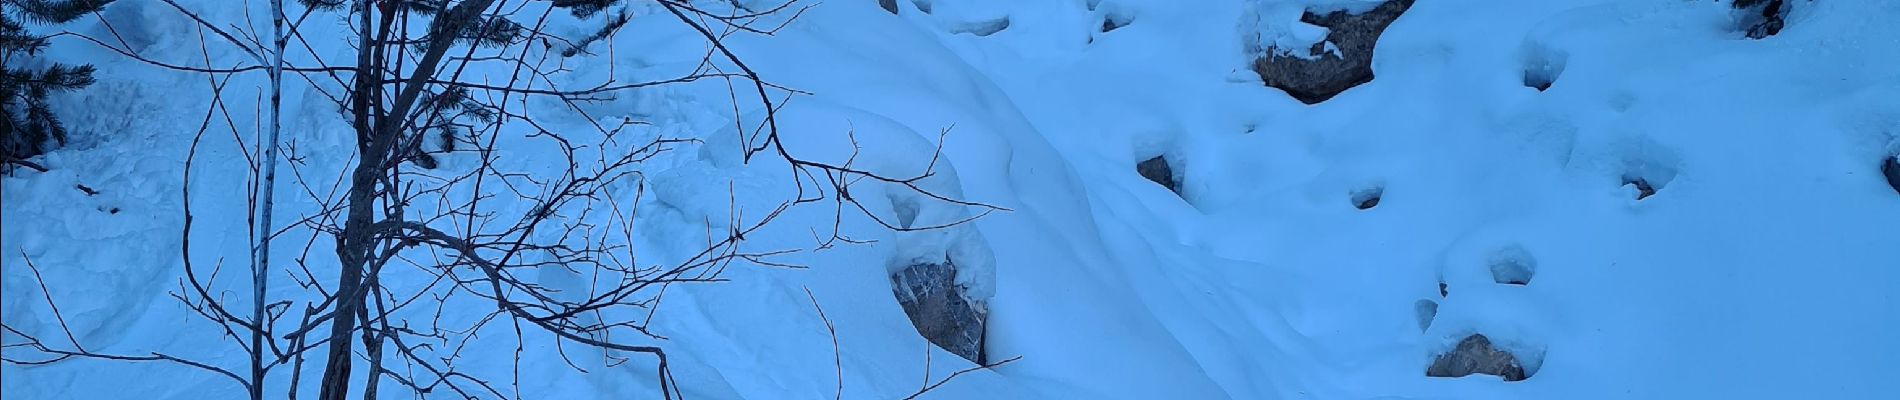 Trail Touring skiing Cervières - Crêtes de la lauze ou voyage dans les entrailles de terre rouge - Photo